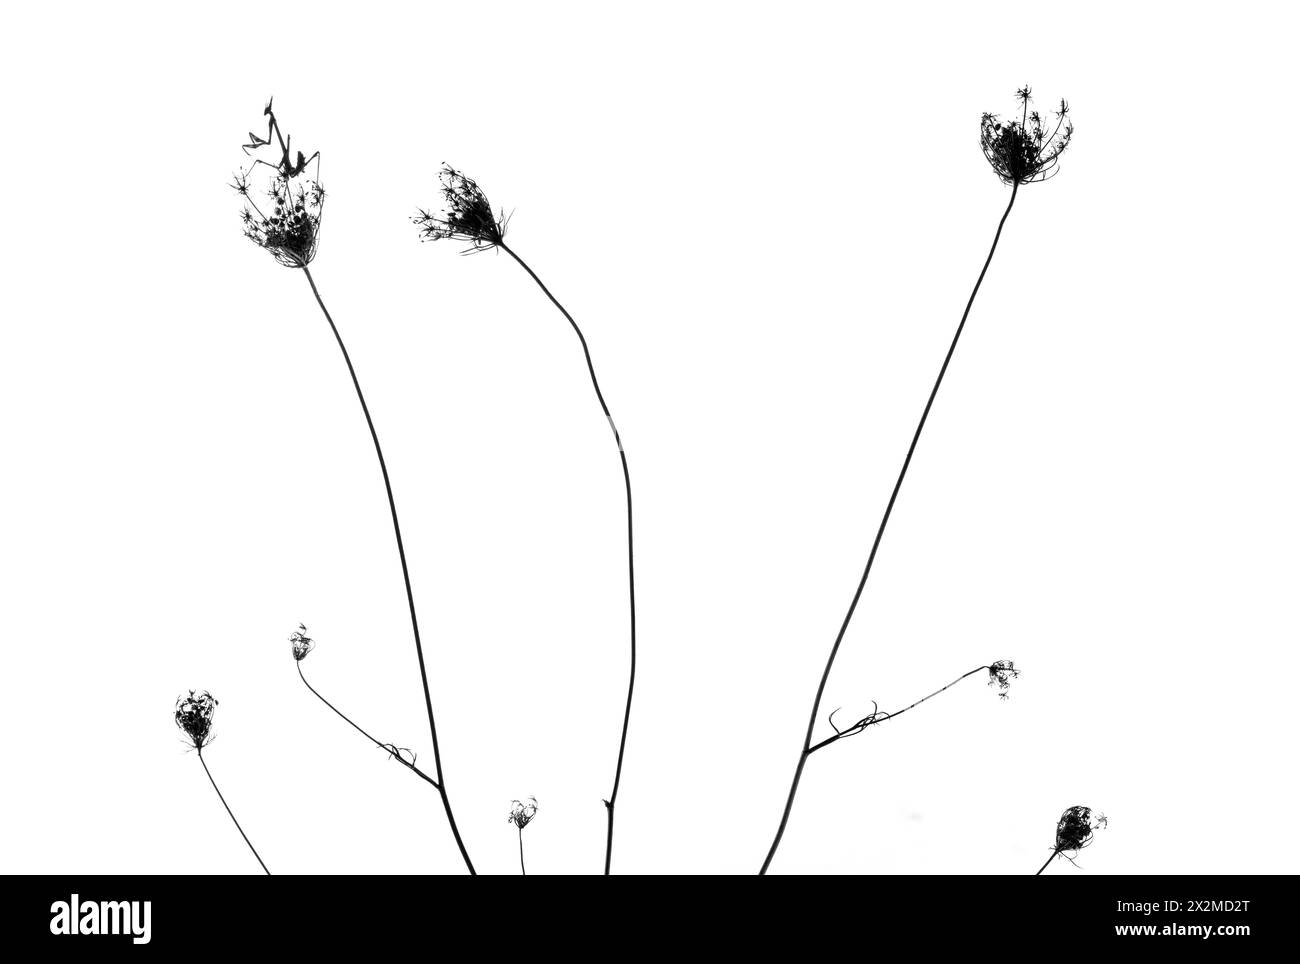 Silhouette von schlanken Pflanzen mit zarten Samenköpfen vor weißem Hintergrund, die an eine minimalistische und ruhige Szene erinnern. Stockfoto